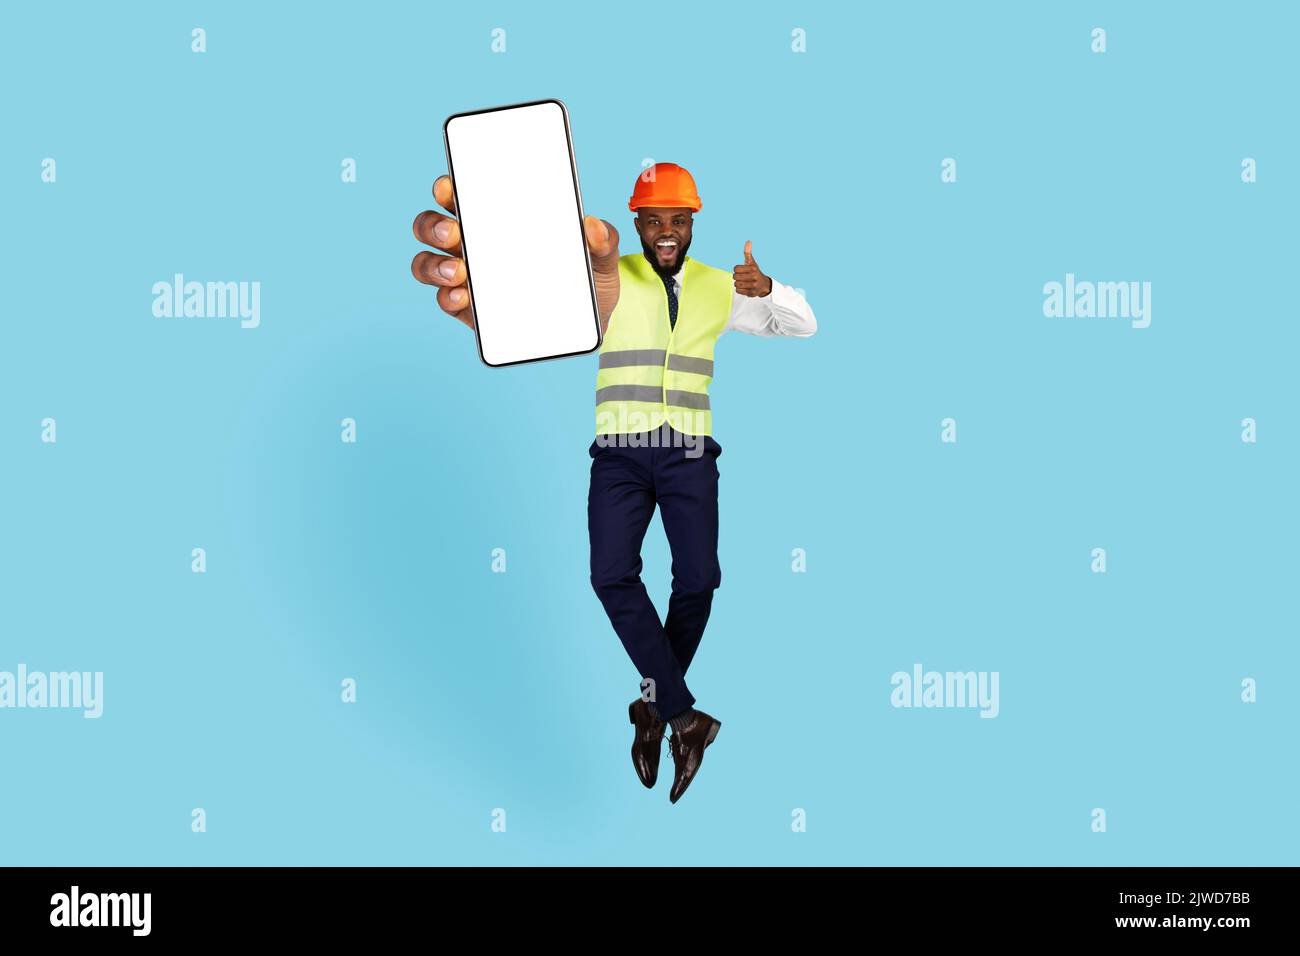 Ingegnere nero con smartphone vuoto in mano saltando e mostrando il pollice in alto Foto Stock